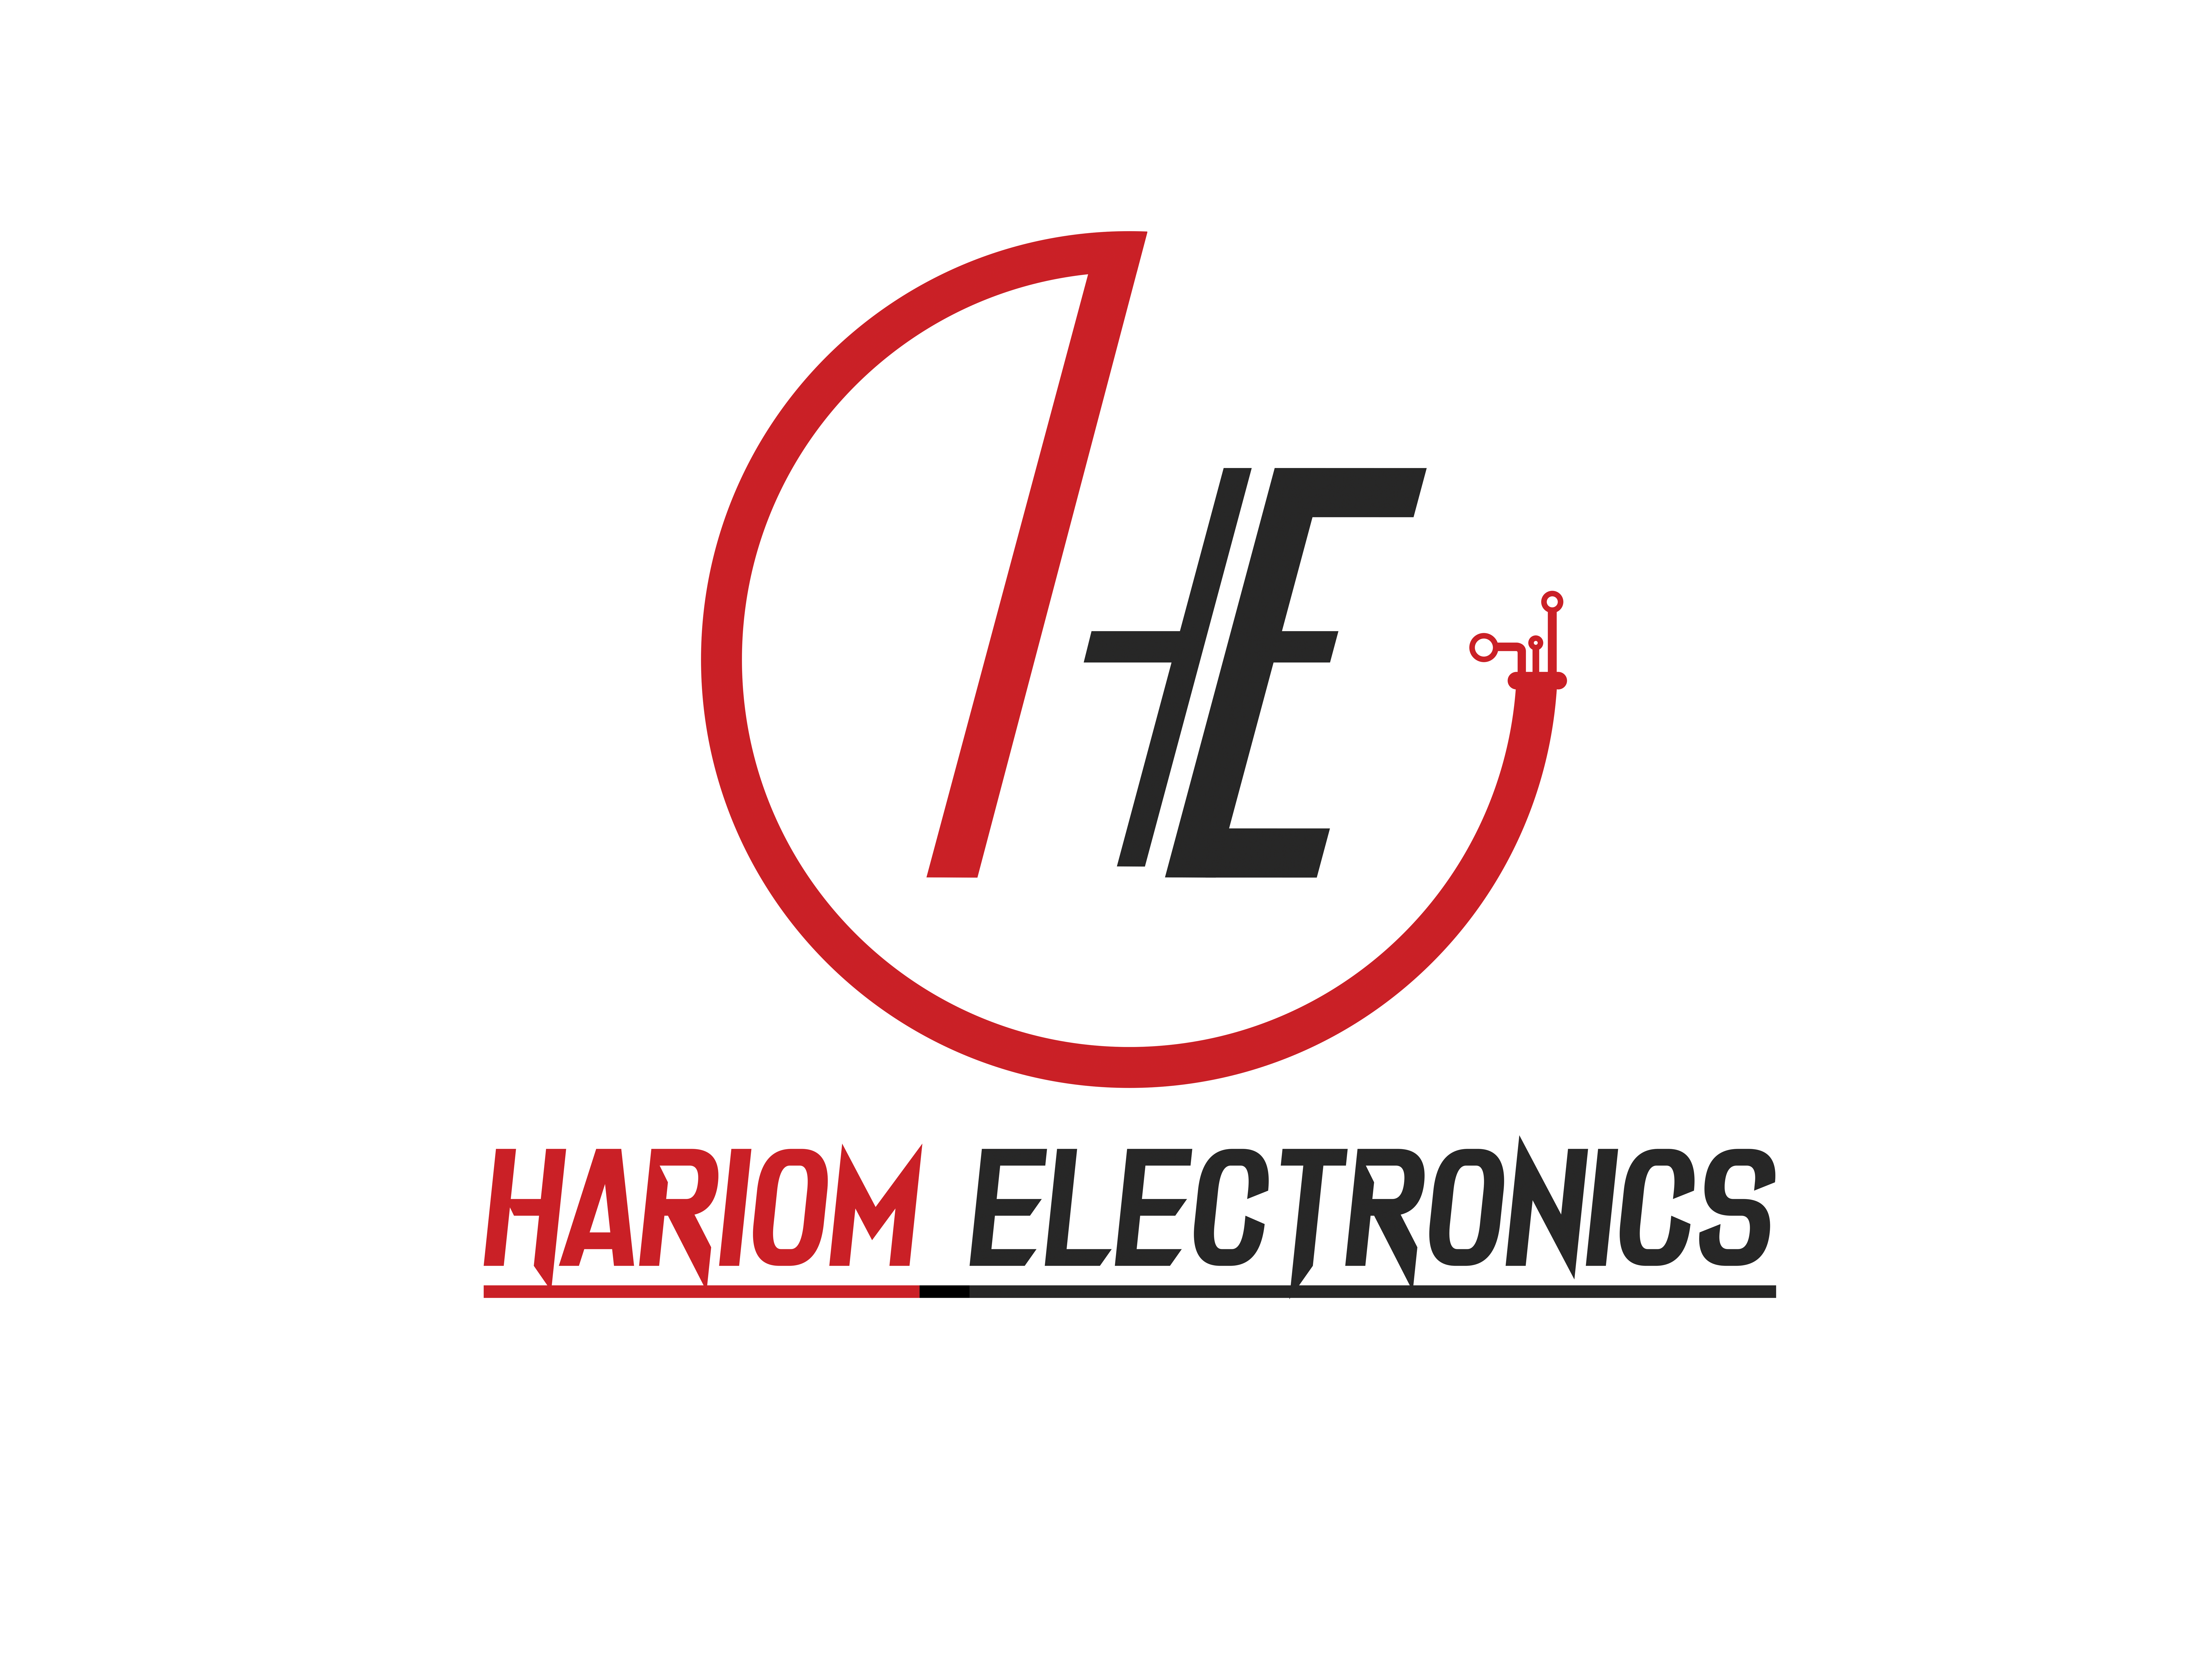 HARIOM ELECTRONICS